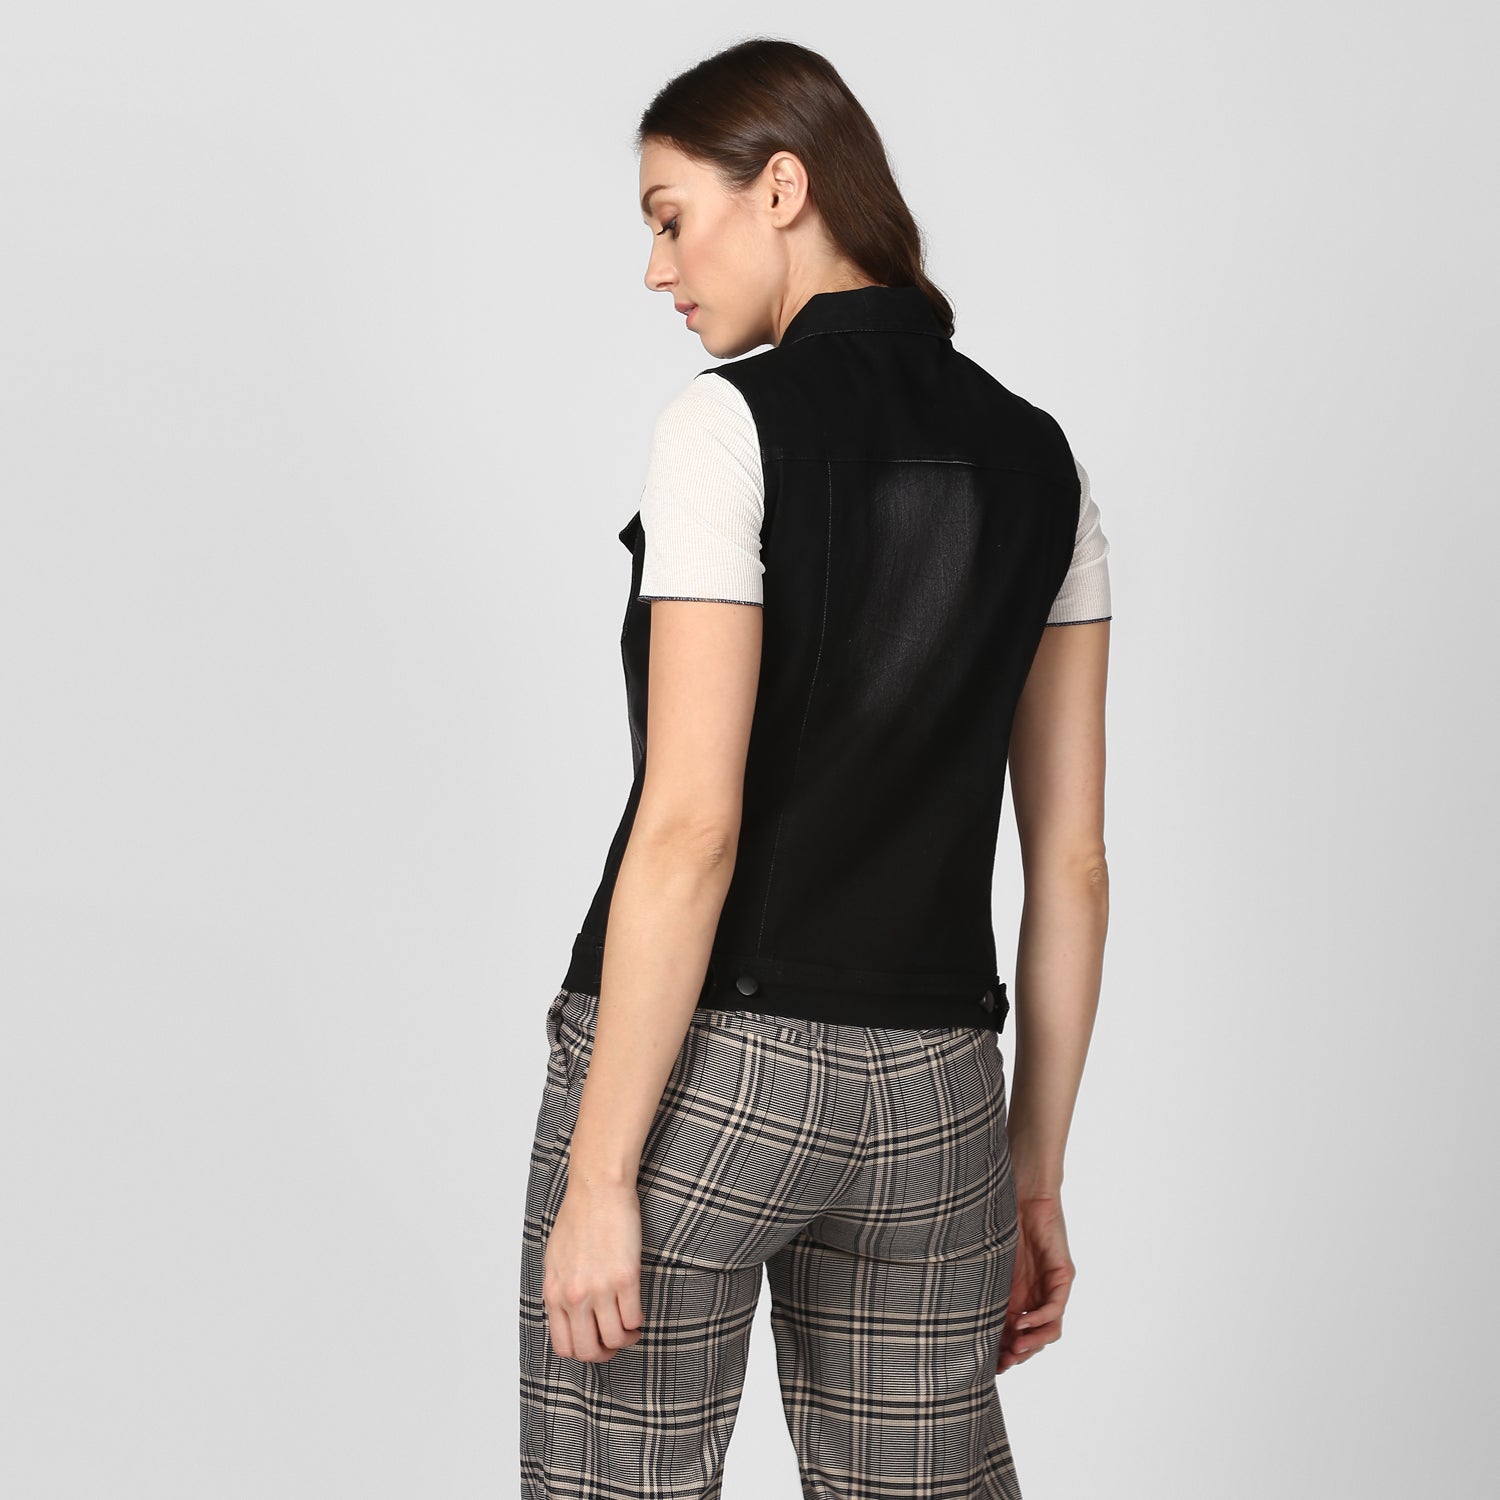 Women's Black Denim Sleeveless Jacket with Washed effect - StyleStone